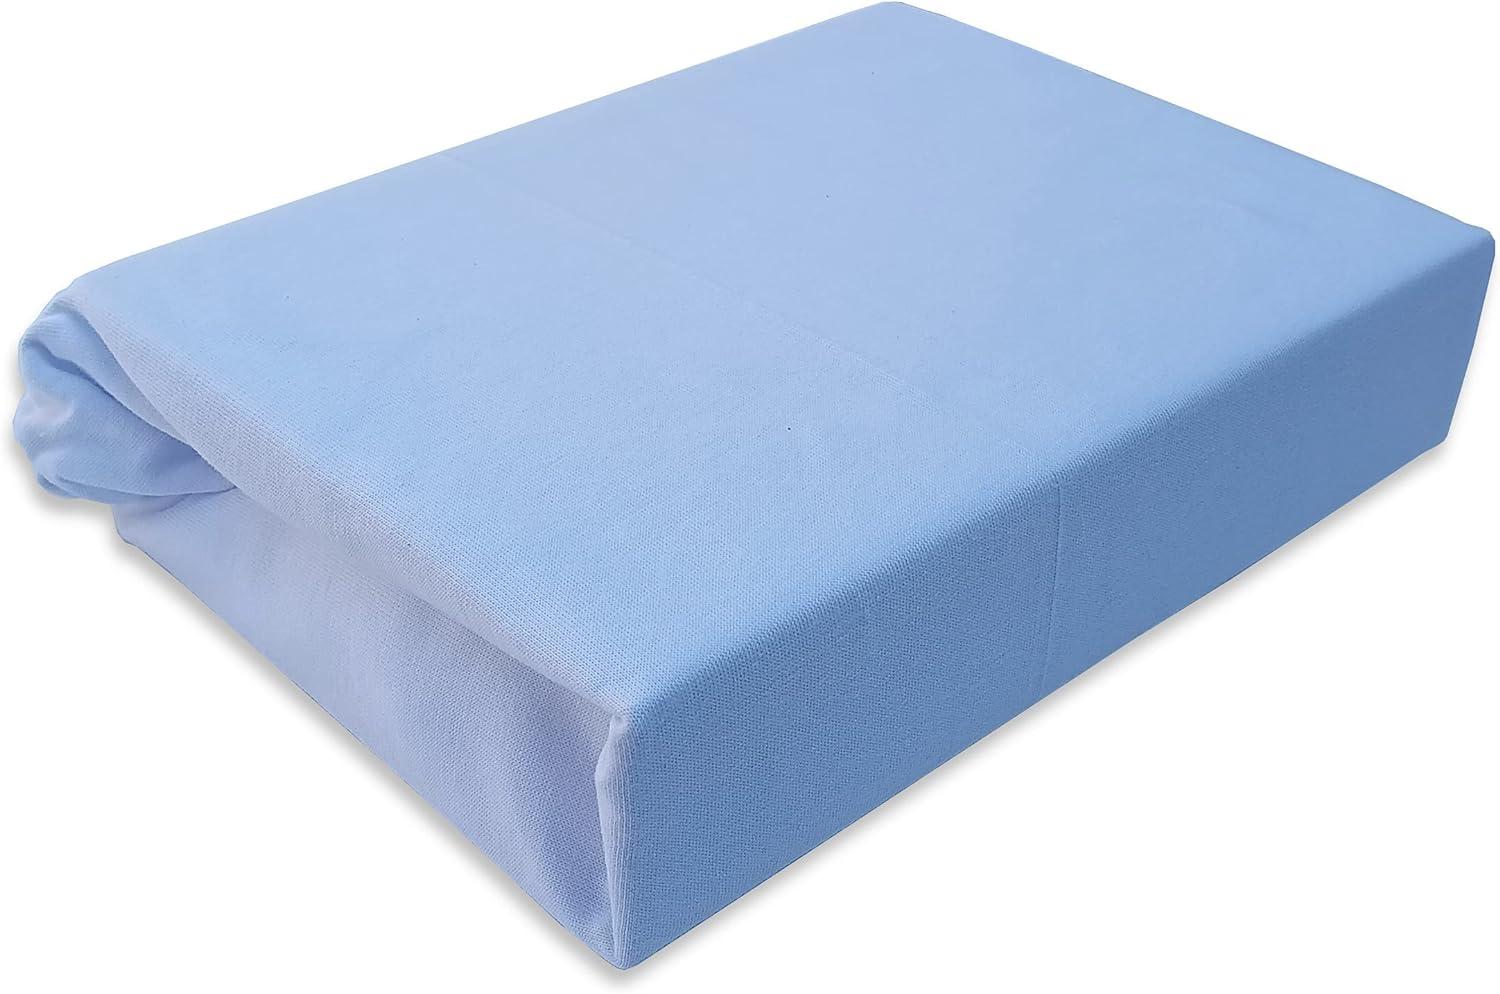 Spannbettlaken Kinderbett JERSEY 60x120 70x140 80x160 Top Qualität Hohe Gewicht 180g/m2 (60x120, Blau) Bild 1